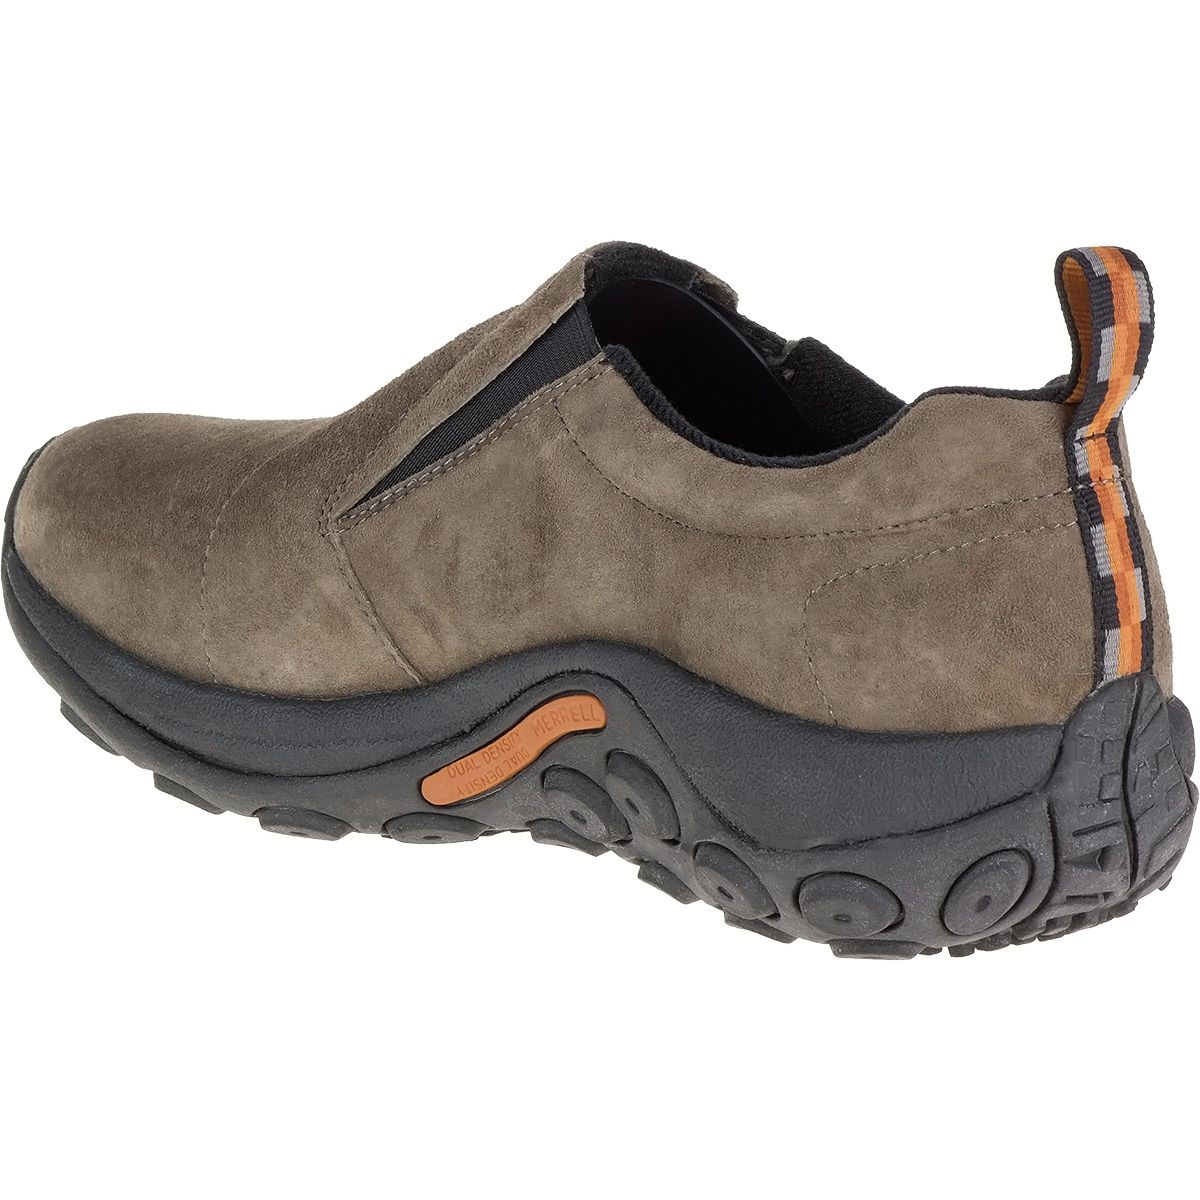 Merrell Jungle Moc Waterproof Shoe - Men's - Footwear